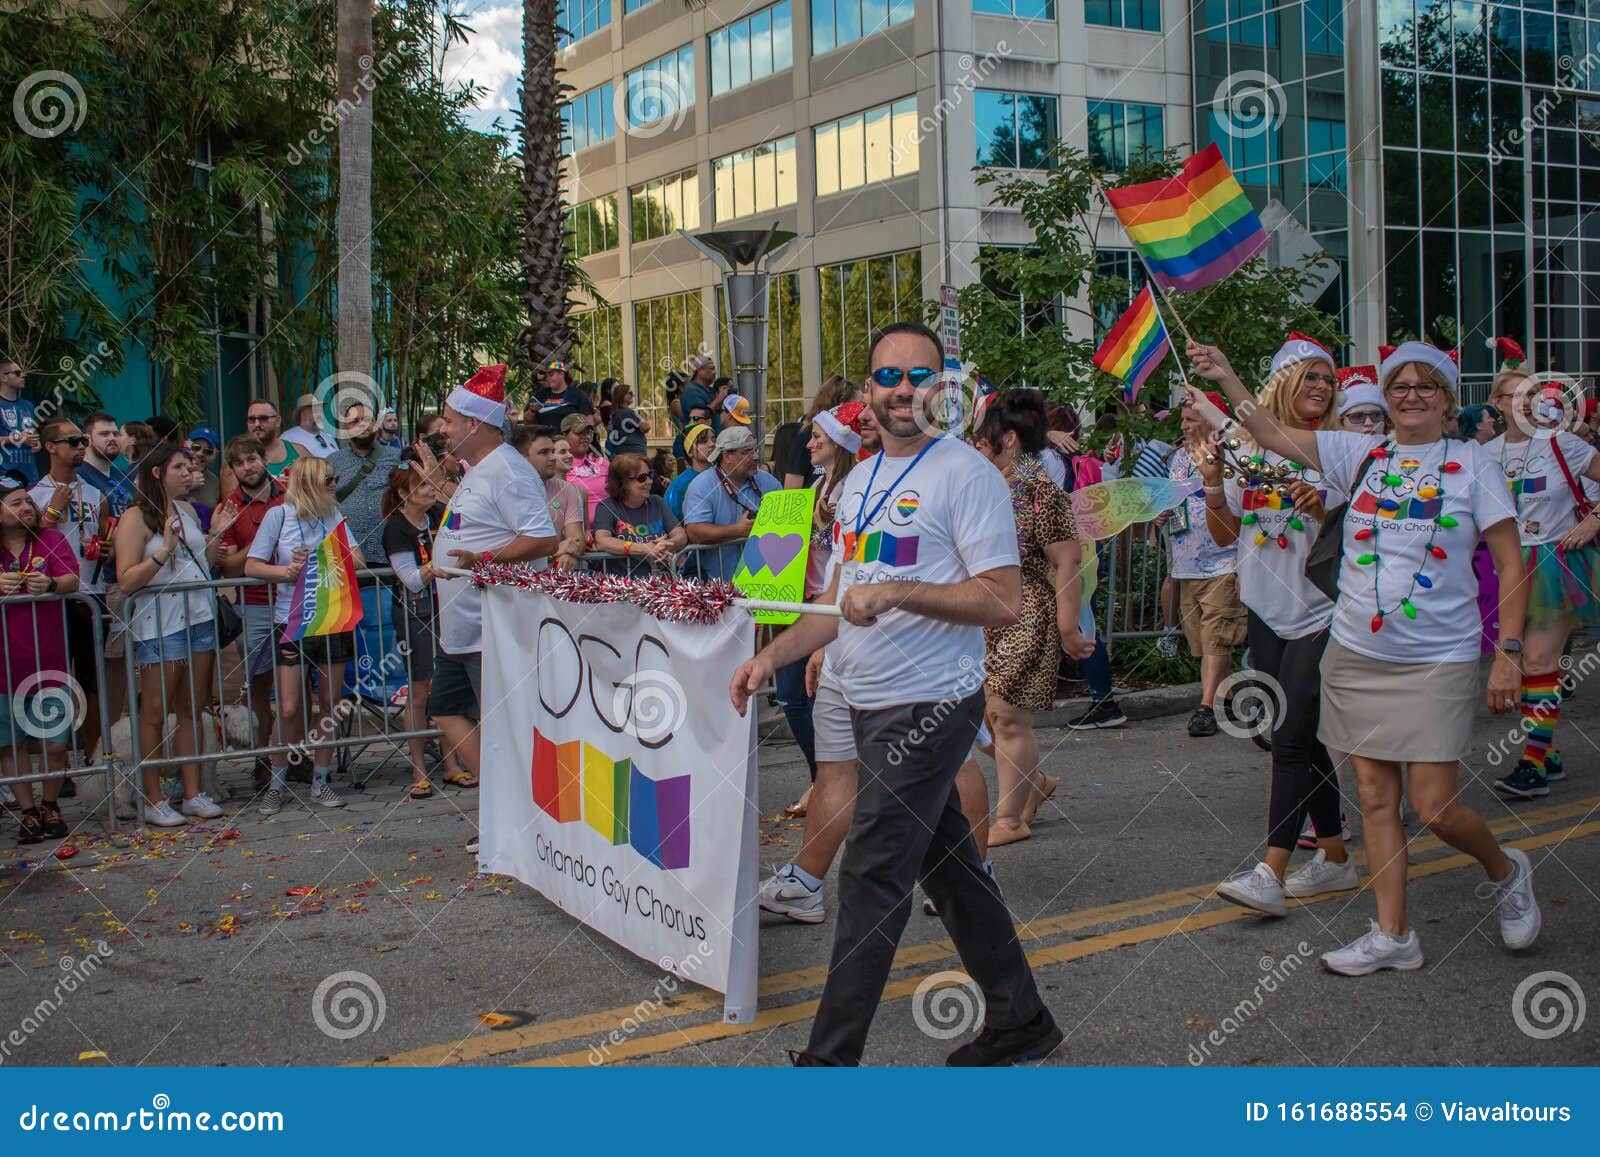 First gay pride parade orlando florida dasejd